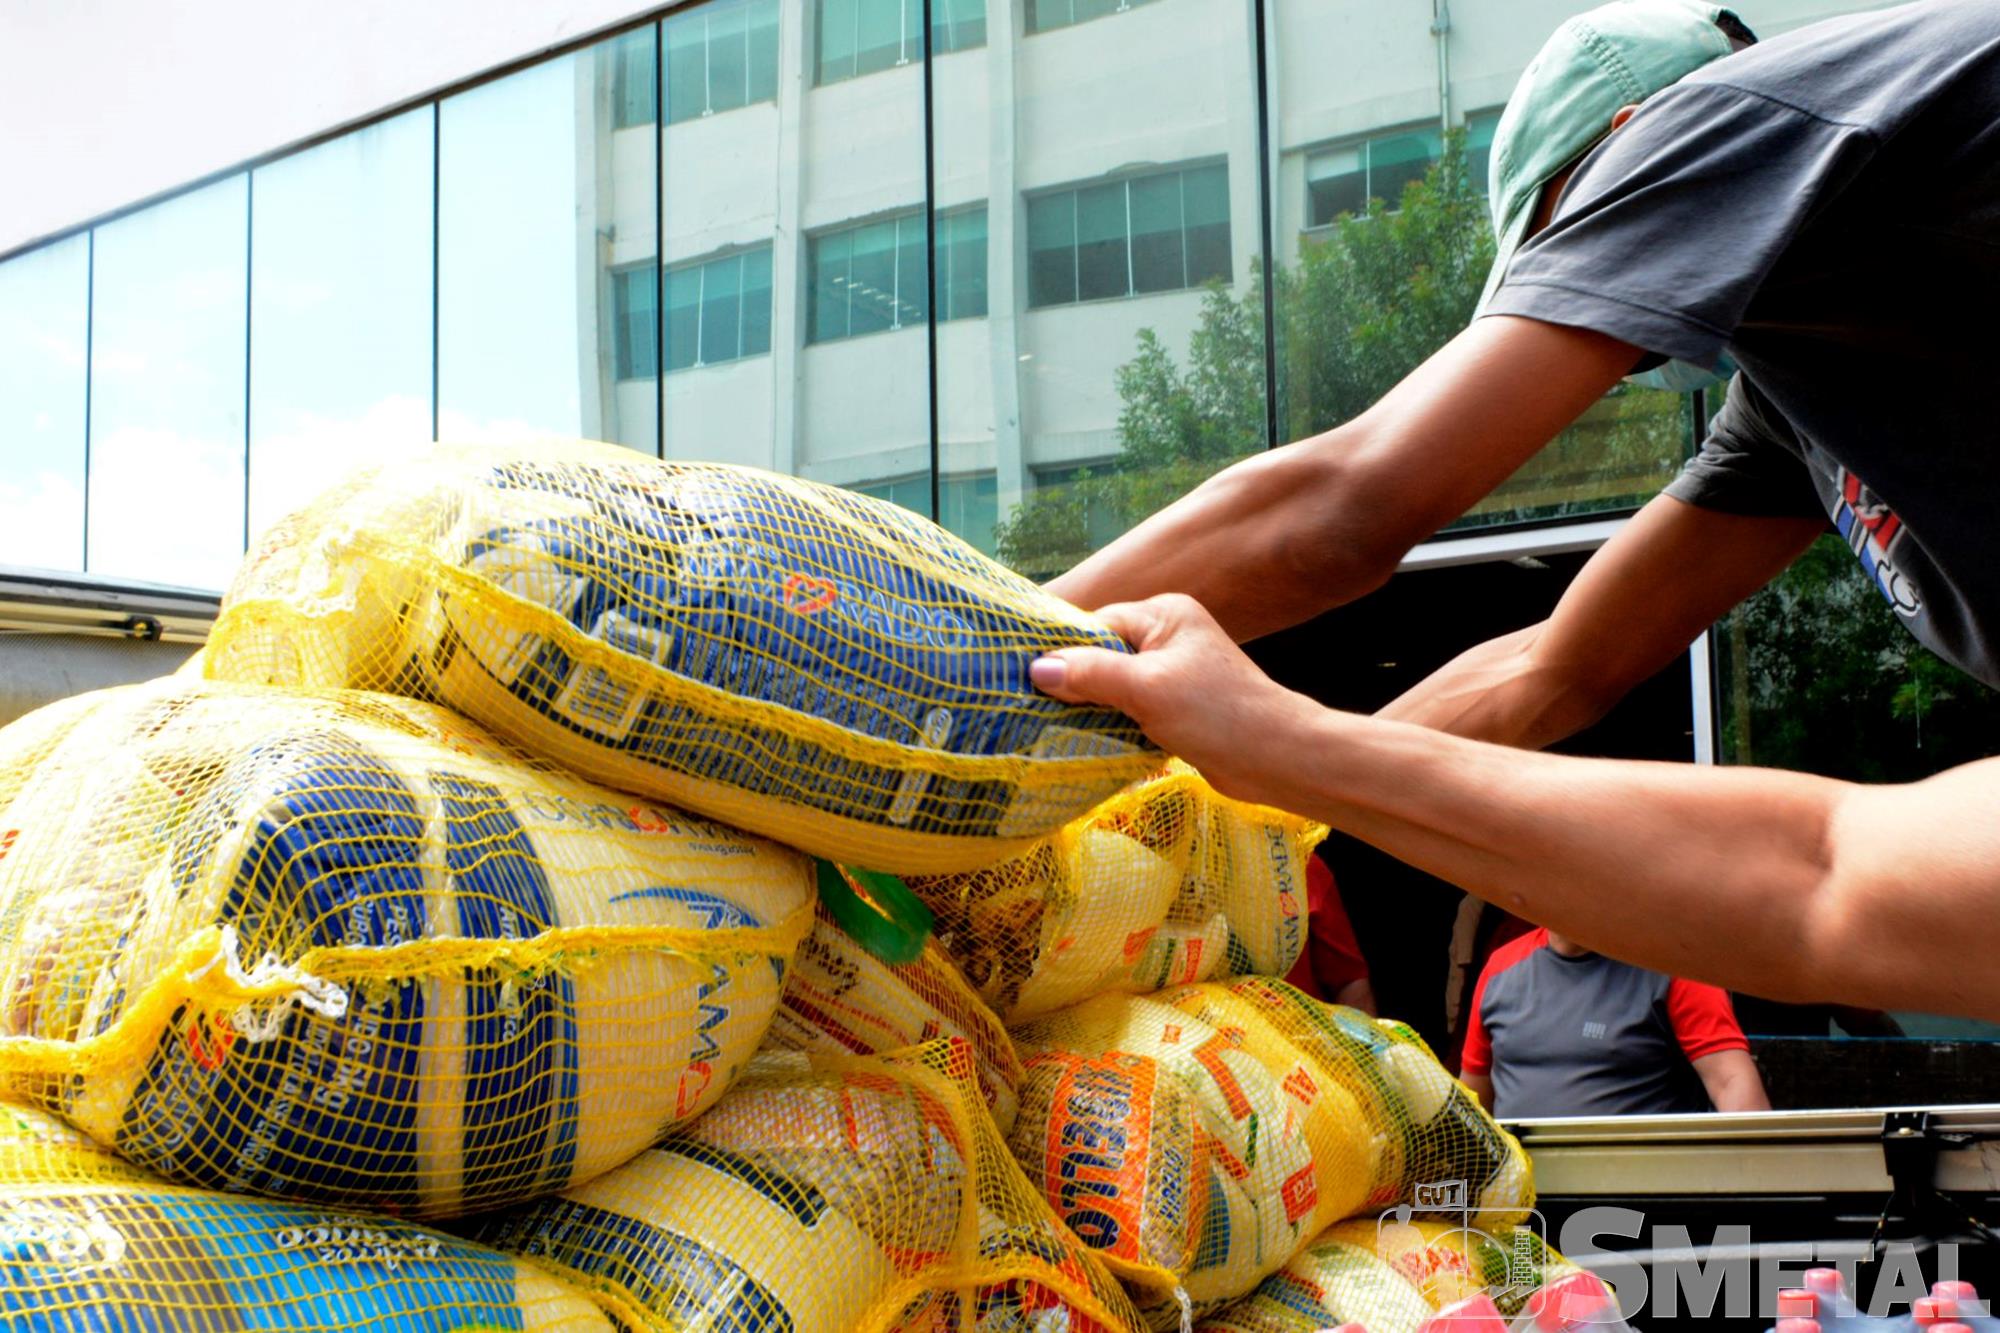 Foguinho/Imprensa SMetal , #TBT Natal sem Fome doou 2, 1 mil cesta para comunidades e entidades; fotos